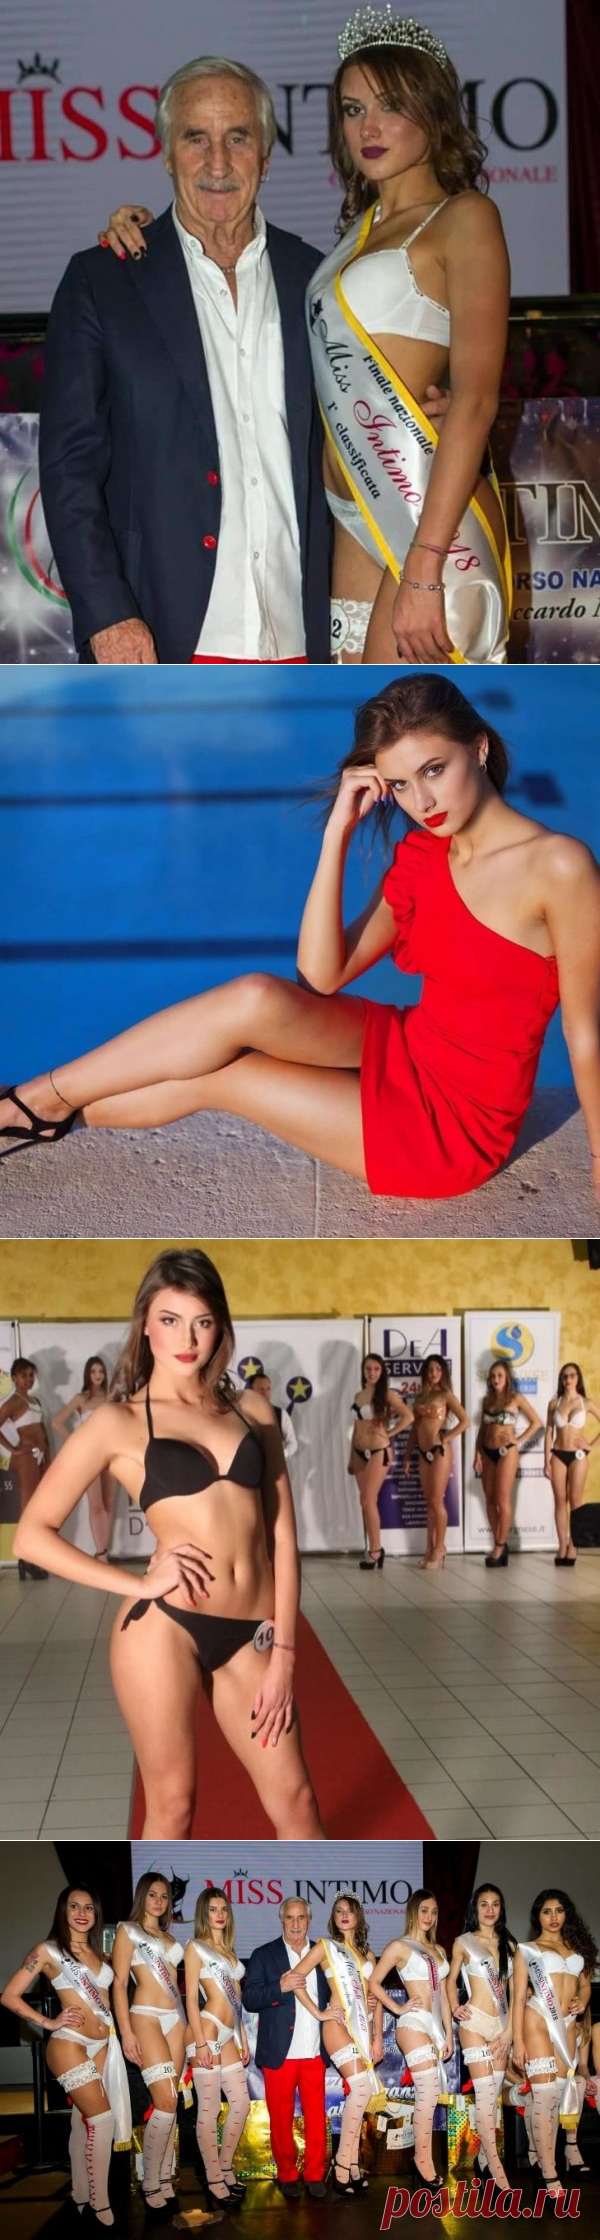 18-летняя молдованка победила в итальянском конкурсе красоты «Miss Intimo 2018» - новости Италии